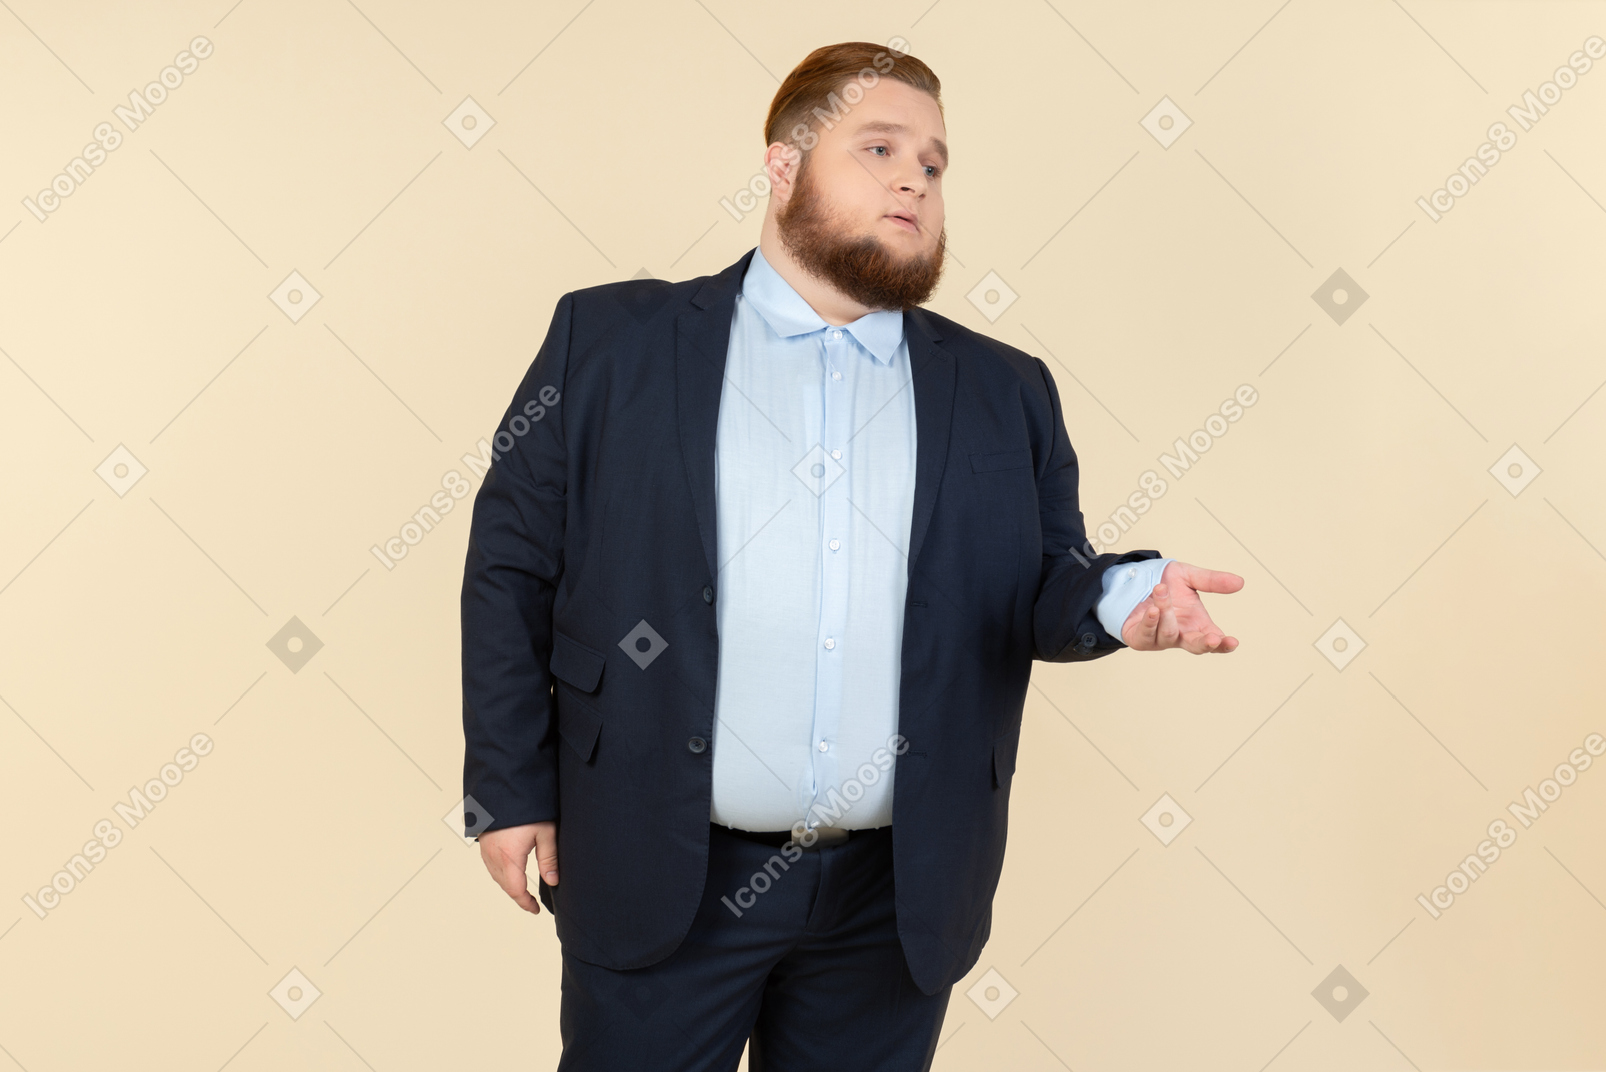 Junger übergewichtiger mann im anzug, der versucht, etwas herauszufinden